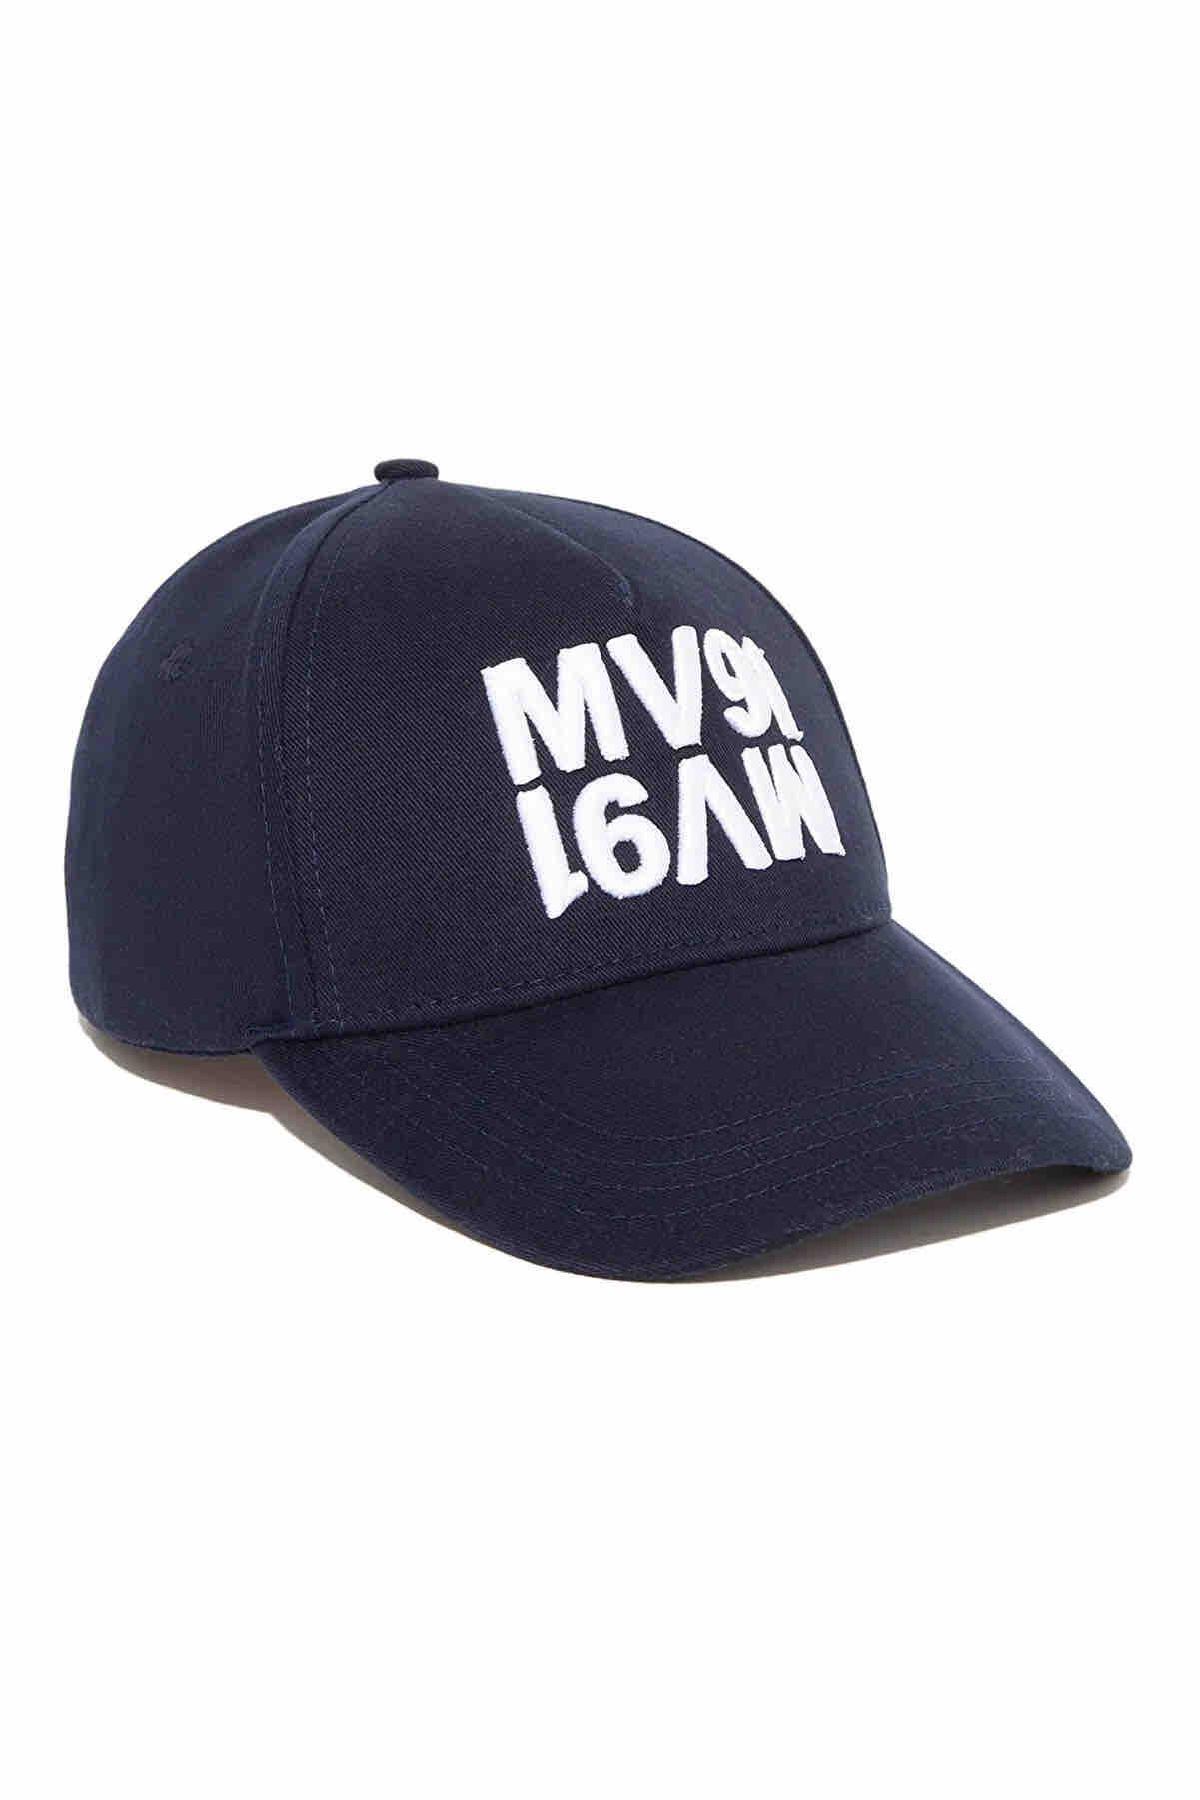 کلاه اسپرت یونیسکس ماوی طرح Mv91 کد.1057